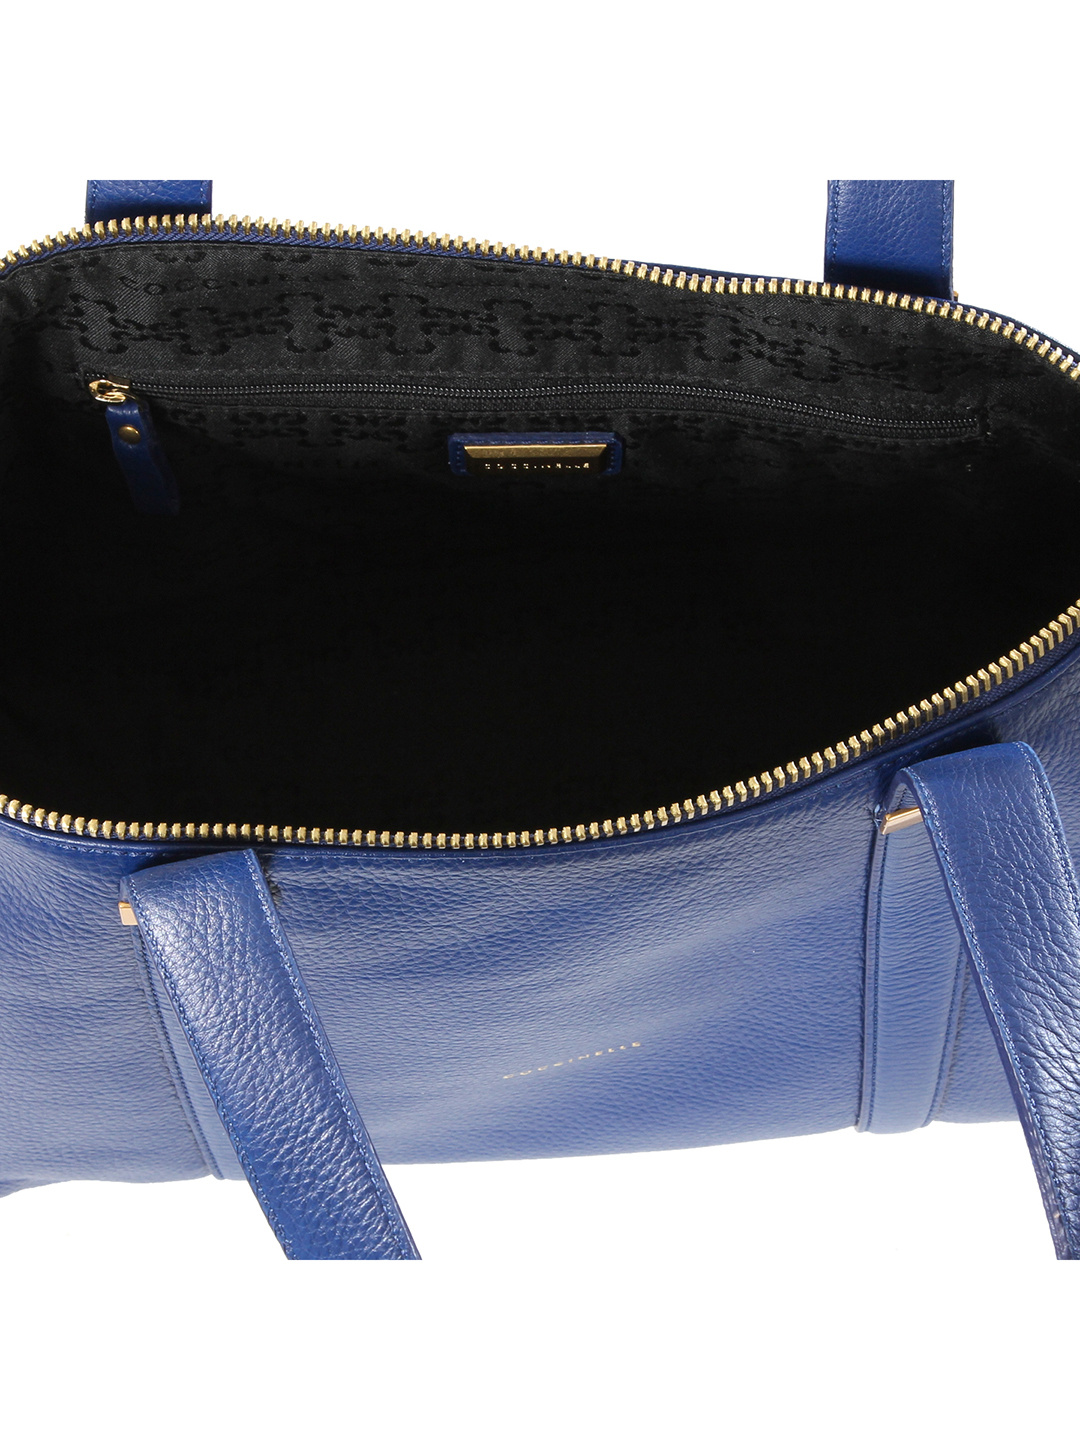 Фото Женская сумка-тоут из высококачественной мягкой кожи с длинными ручками на плечо Классические сумки